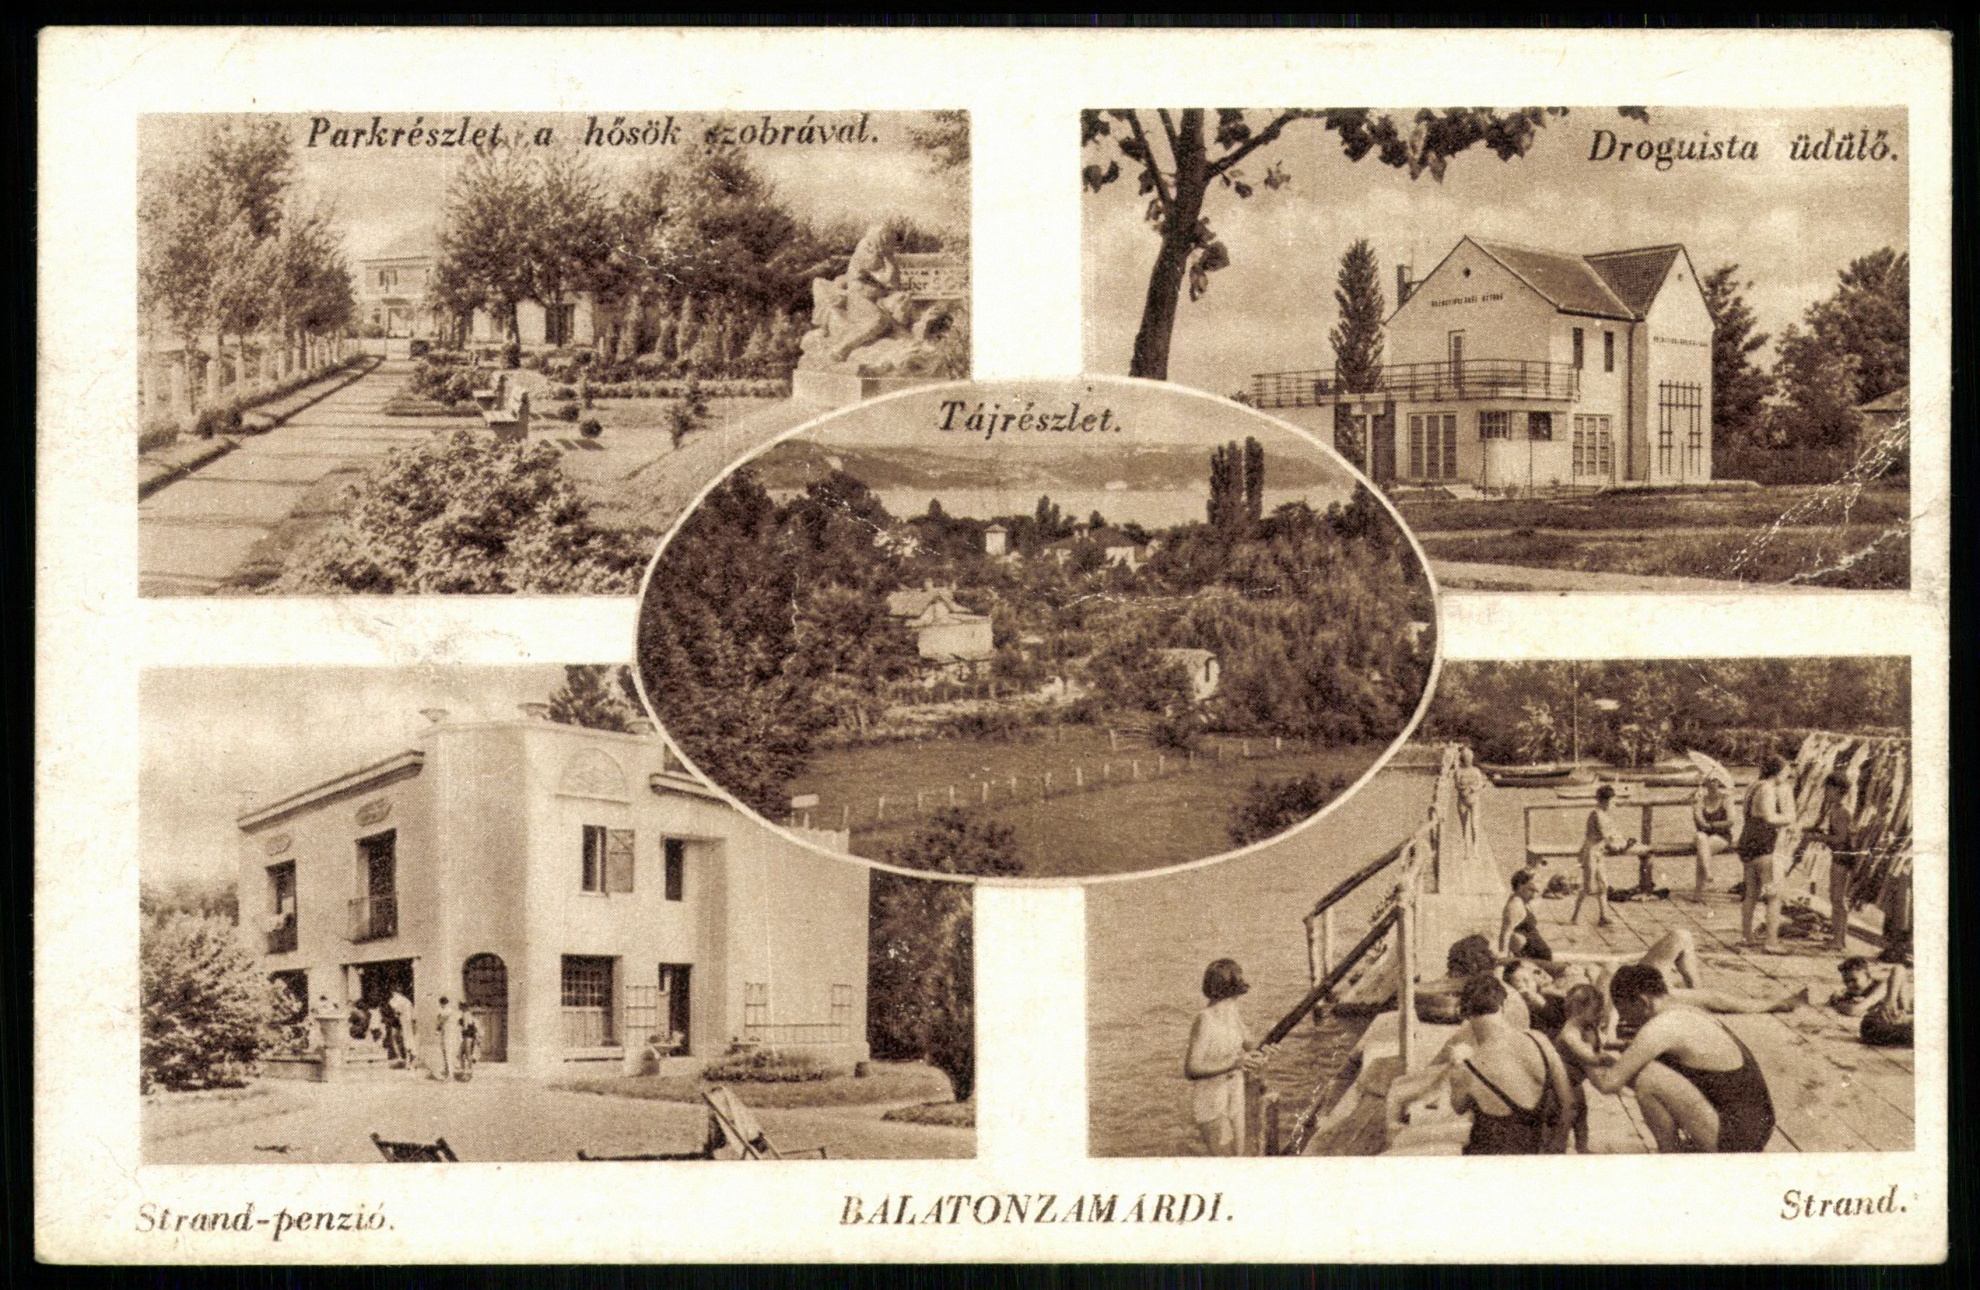 Balatonzamárdi Parkrészlet a hősök szobrával, Drougista üdülő, Strand-penzió, Strand, Tájrészlet (Magyar Kereskedelmi és Vendéglátóipari Múzeum CC BY-NC-ND)